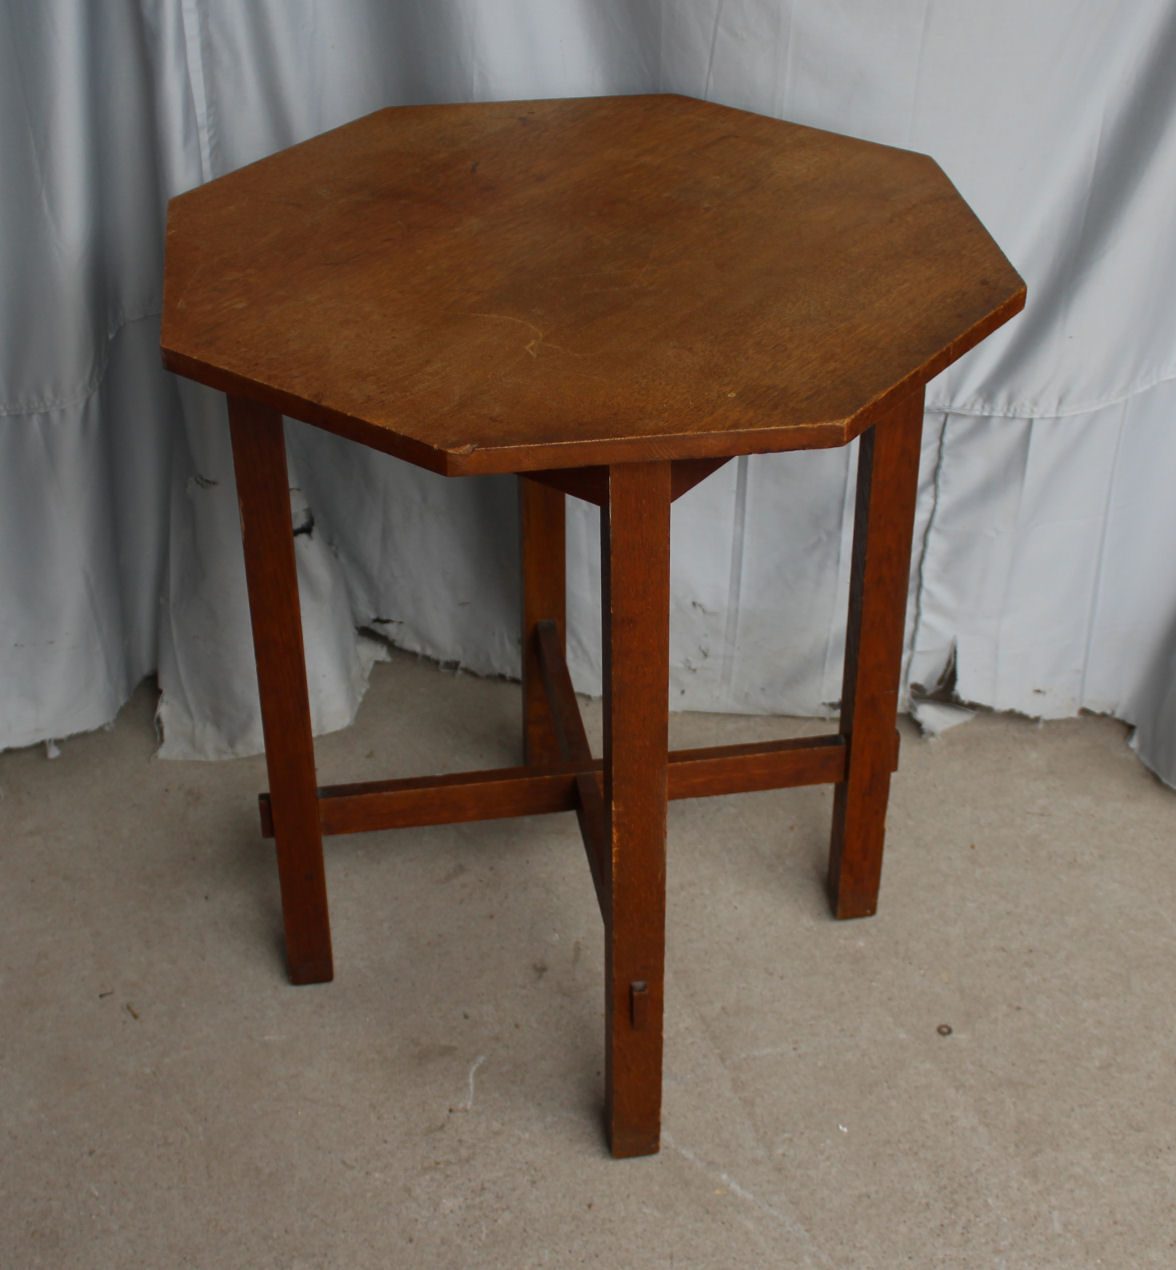 Antique Mission Oak Lamp Table, Mission Oak Table Lamp